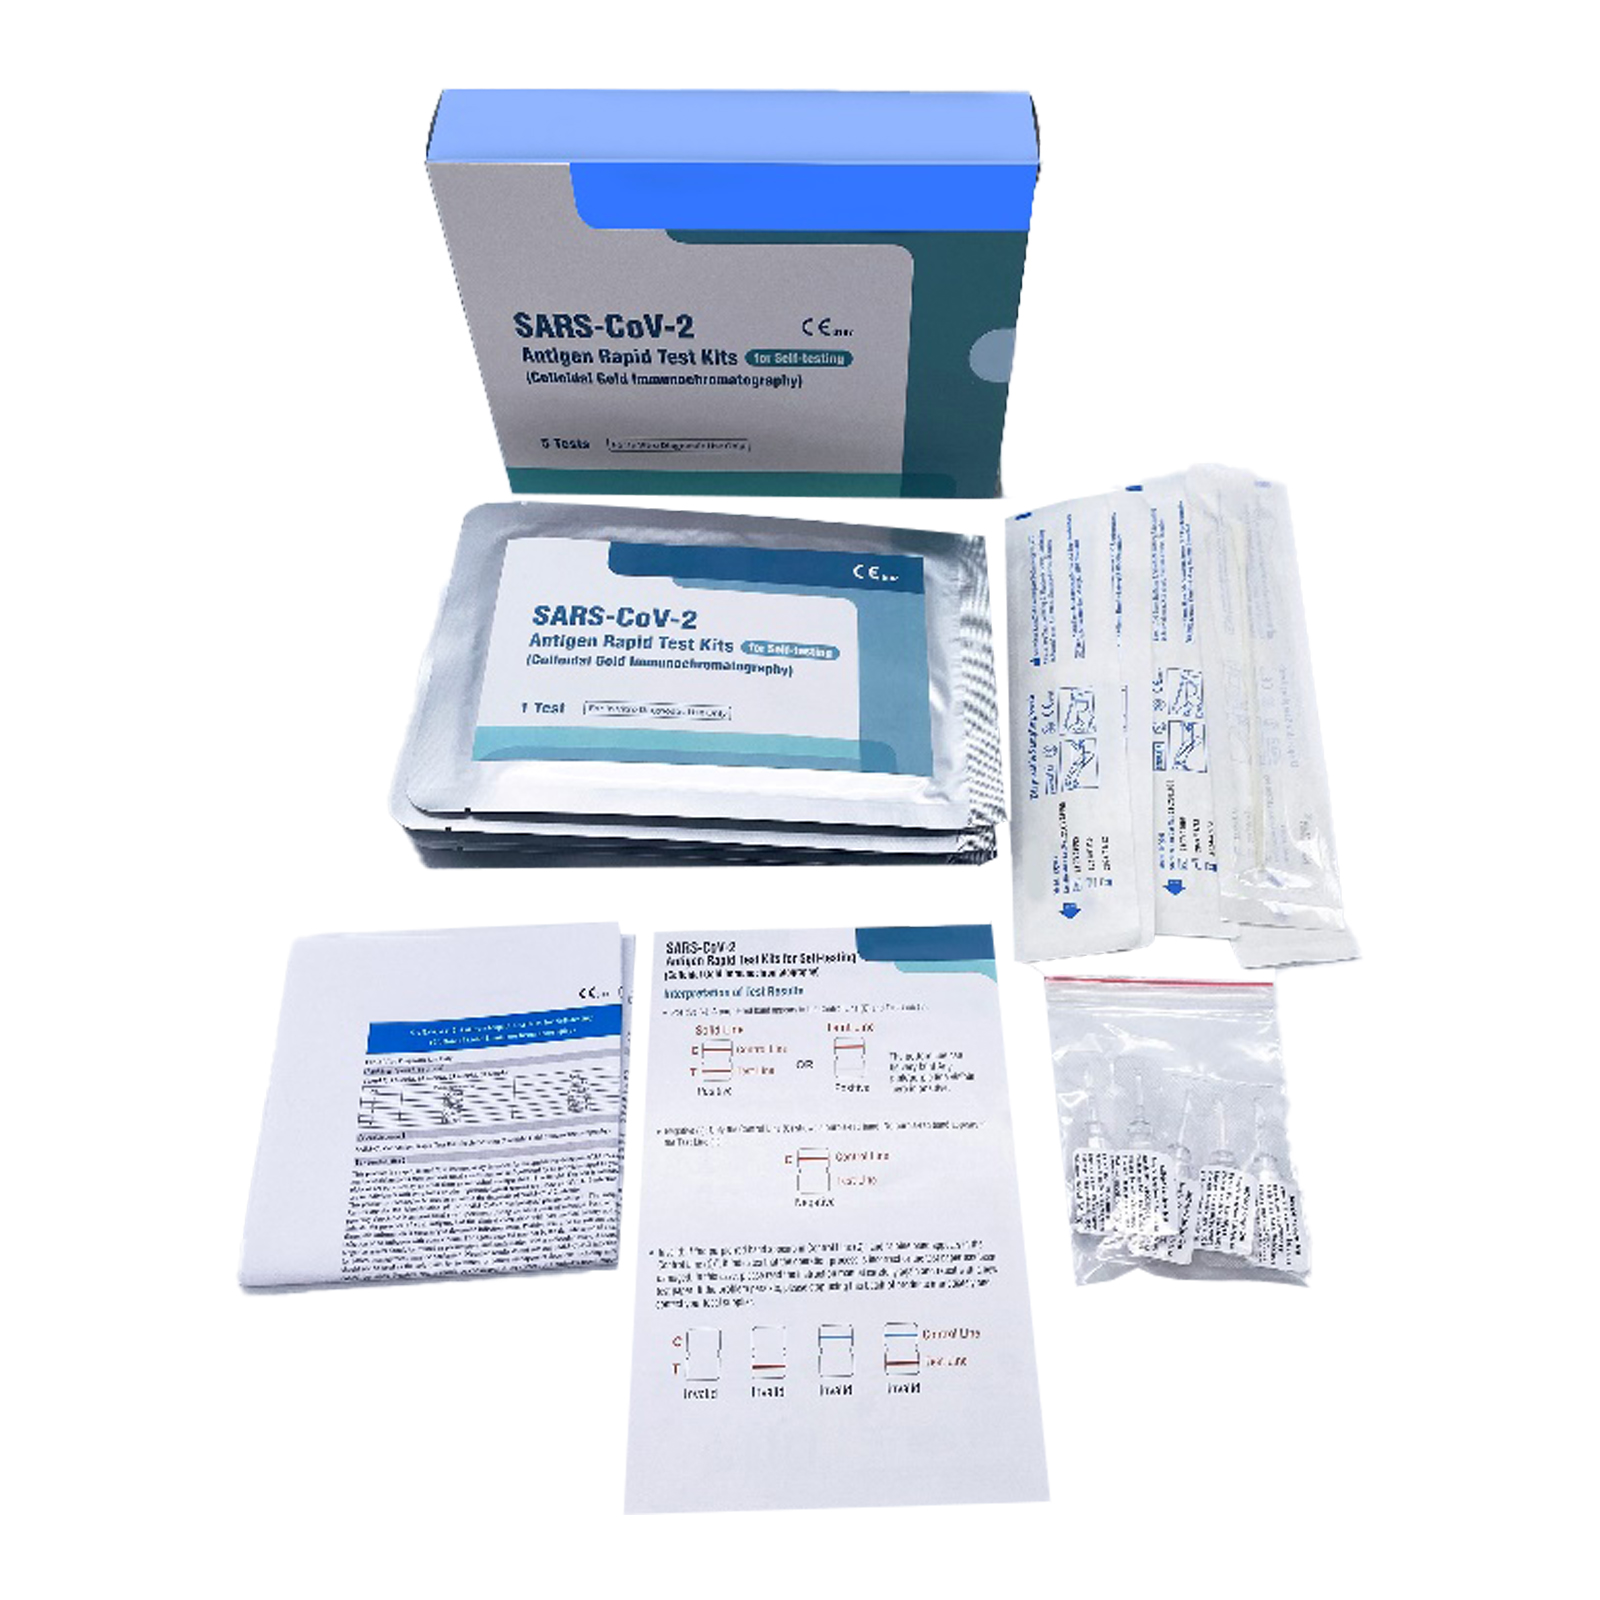 COVID-CARD-360 Cartão de autoteste de antigénio SARS-CoV-2 CE (zaragatoa), embalado a un. por caixa de envio, 360 un. por caixa de envio.